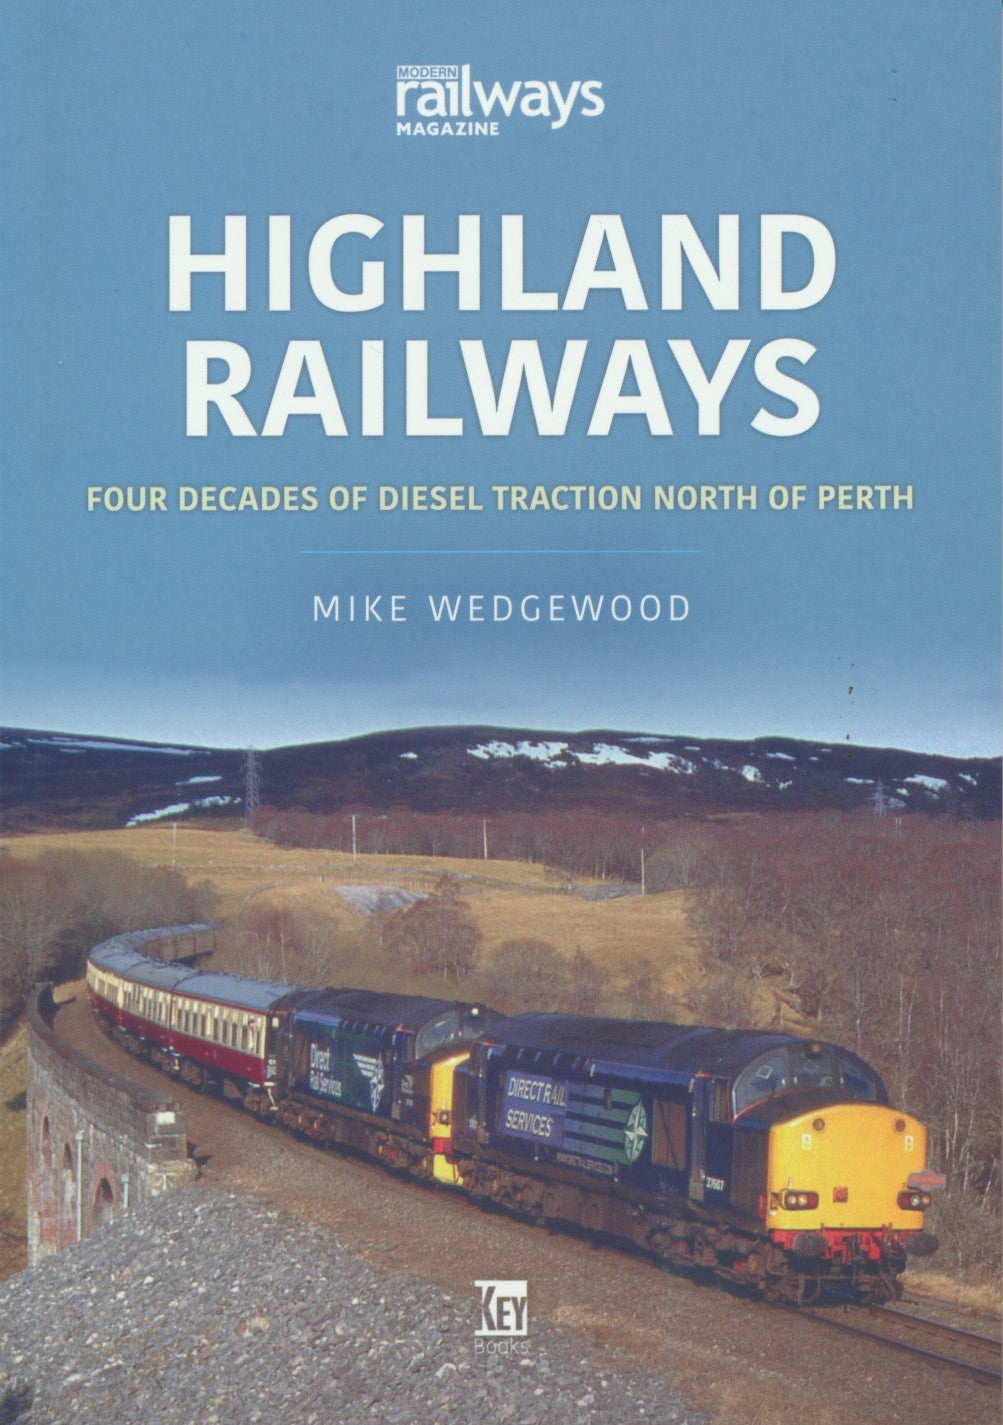 Britain's Railways Series, Volume 19 - Highland Railways